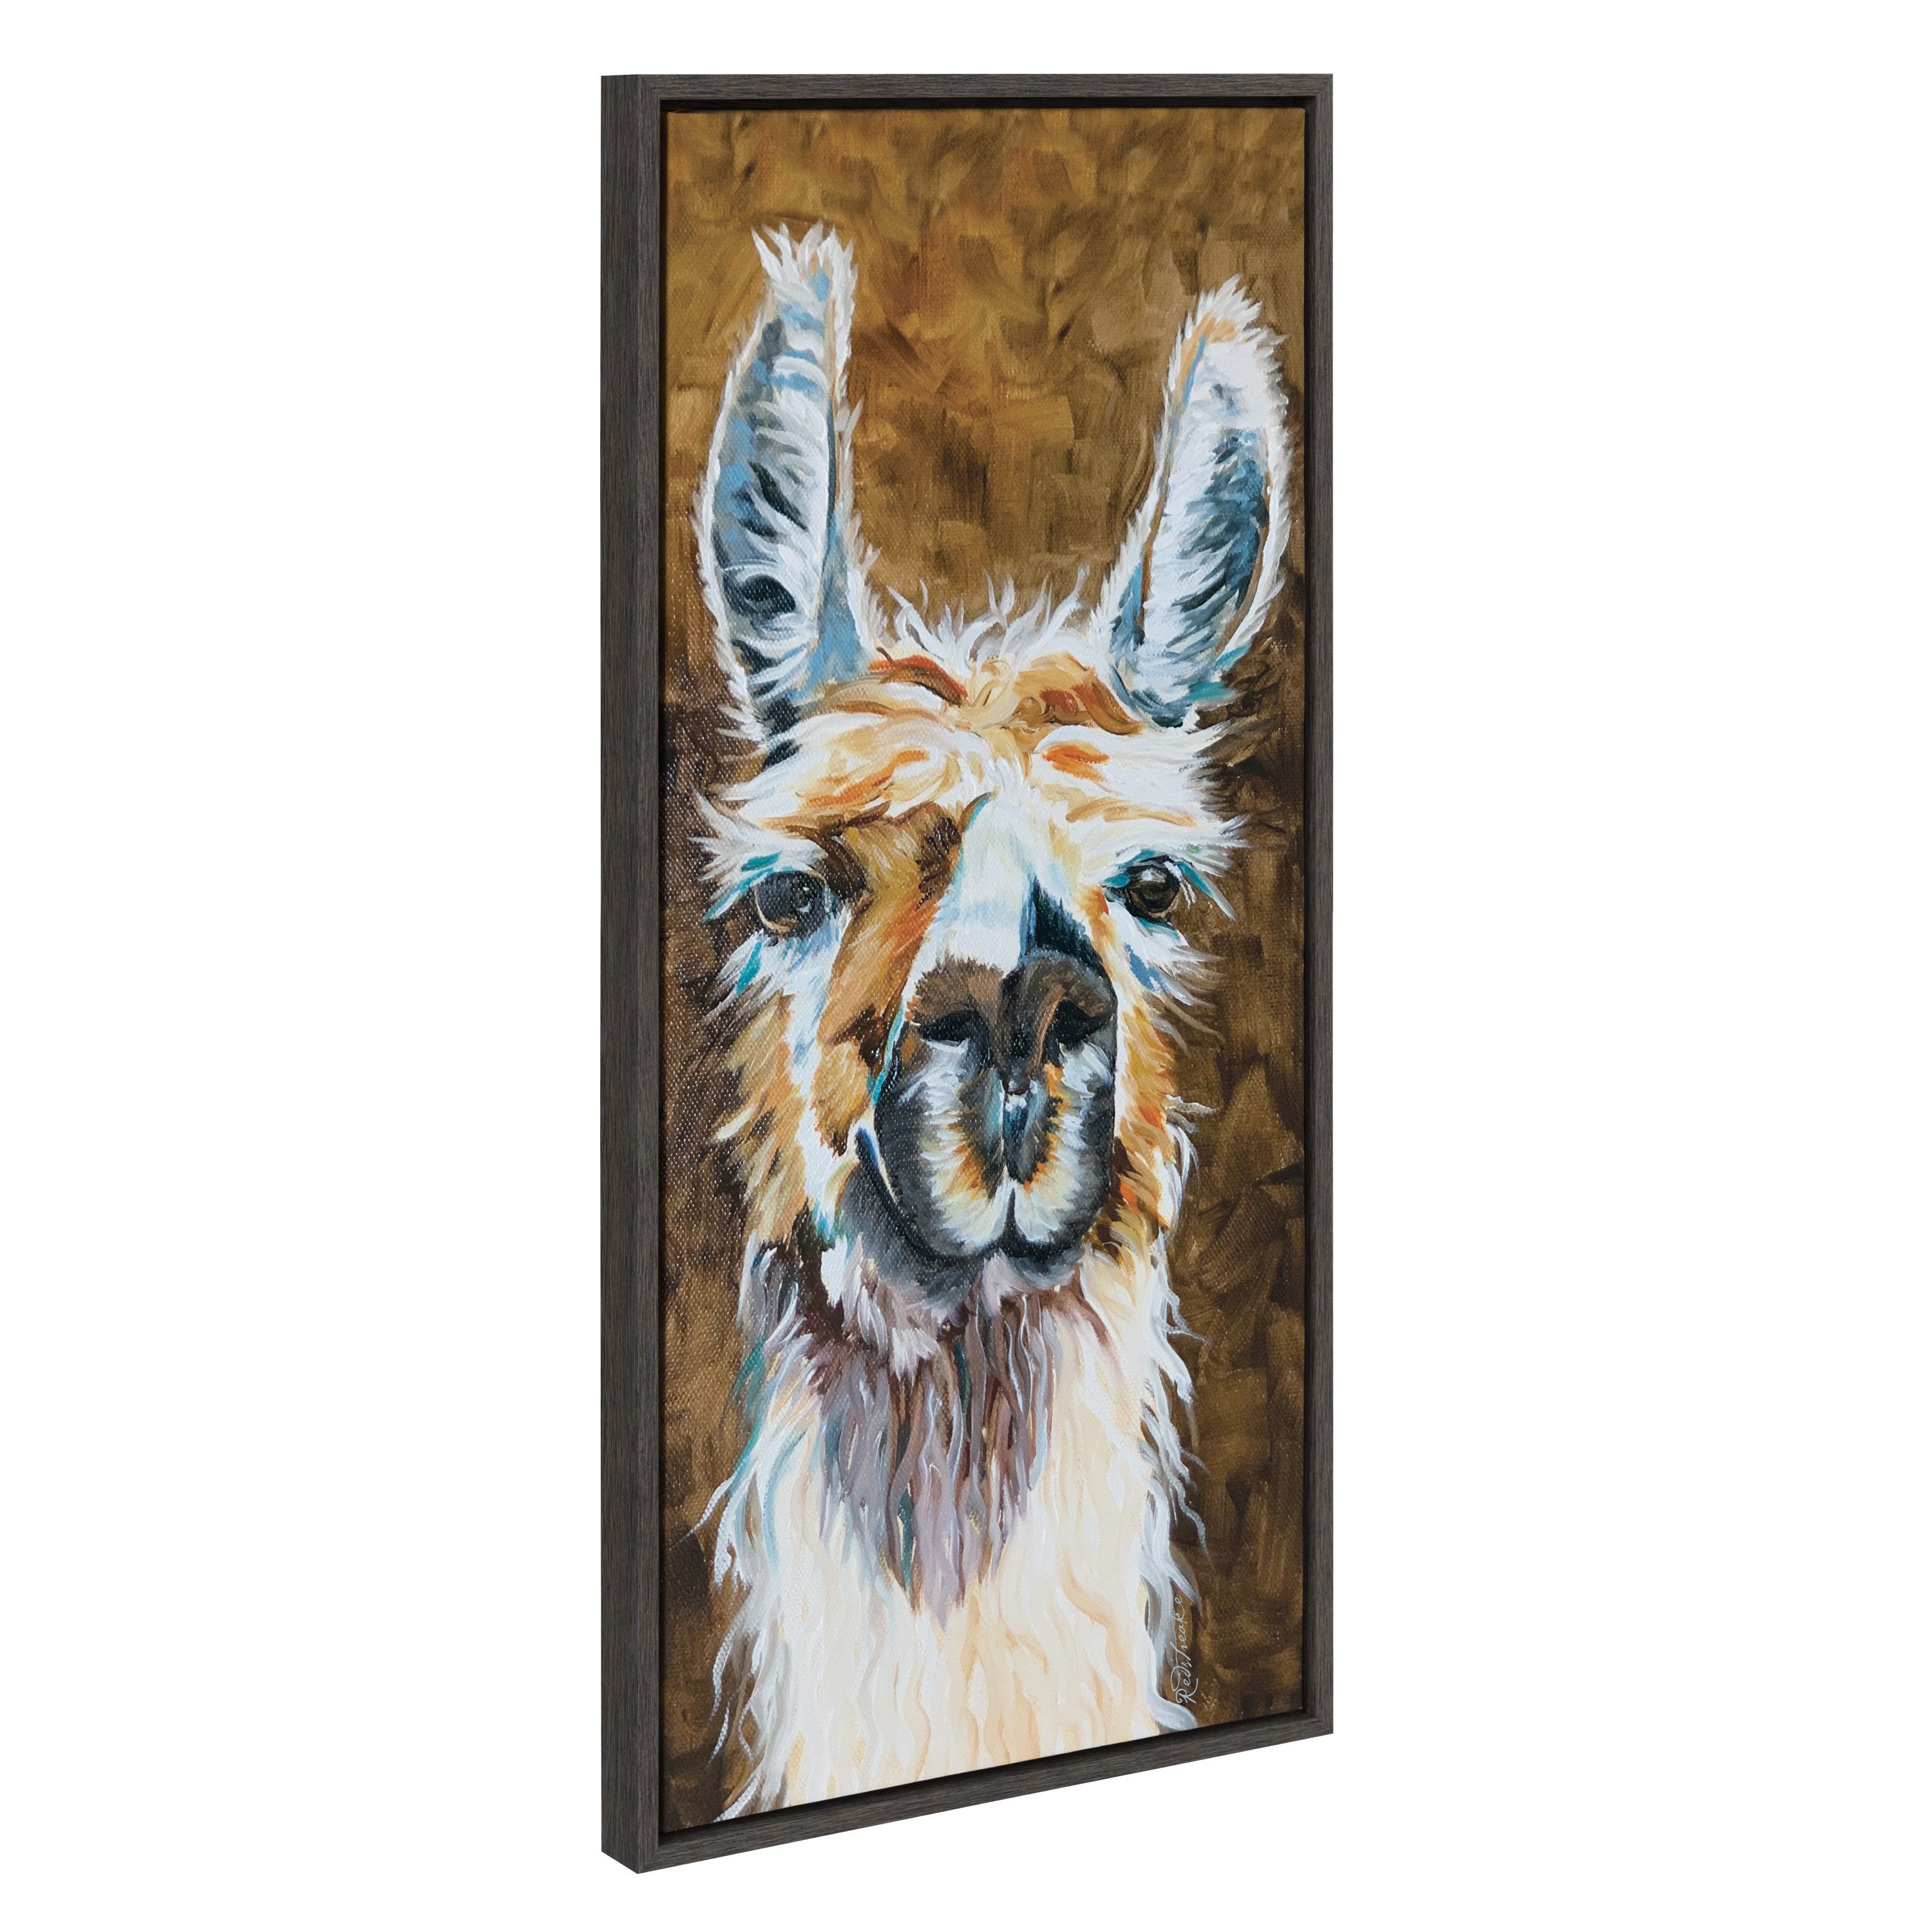 Sylvie Adorable Alpaca Portrait Framed Canvas by Jennifer Redstreake Geary of Redstreake Fine Art